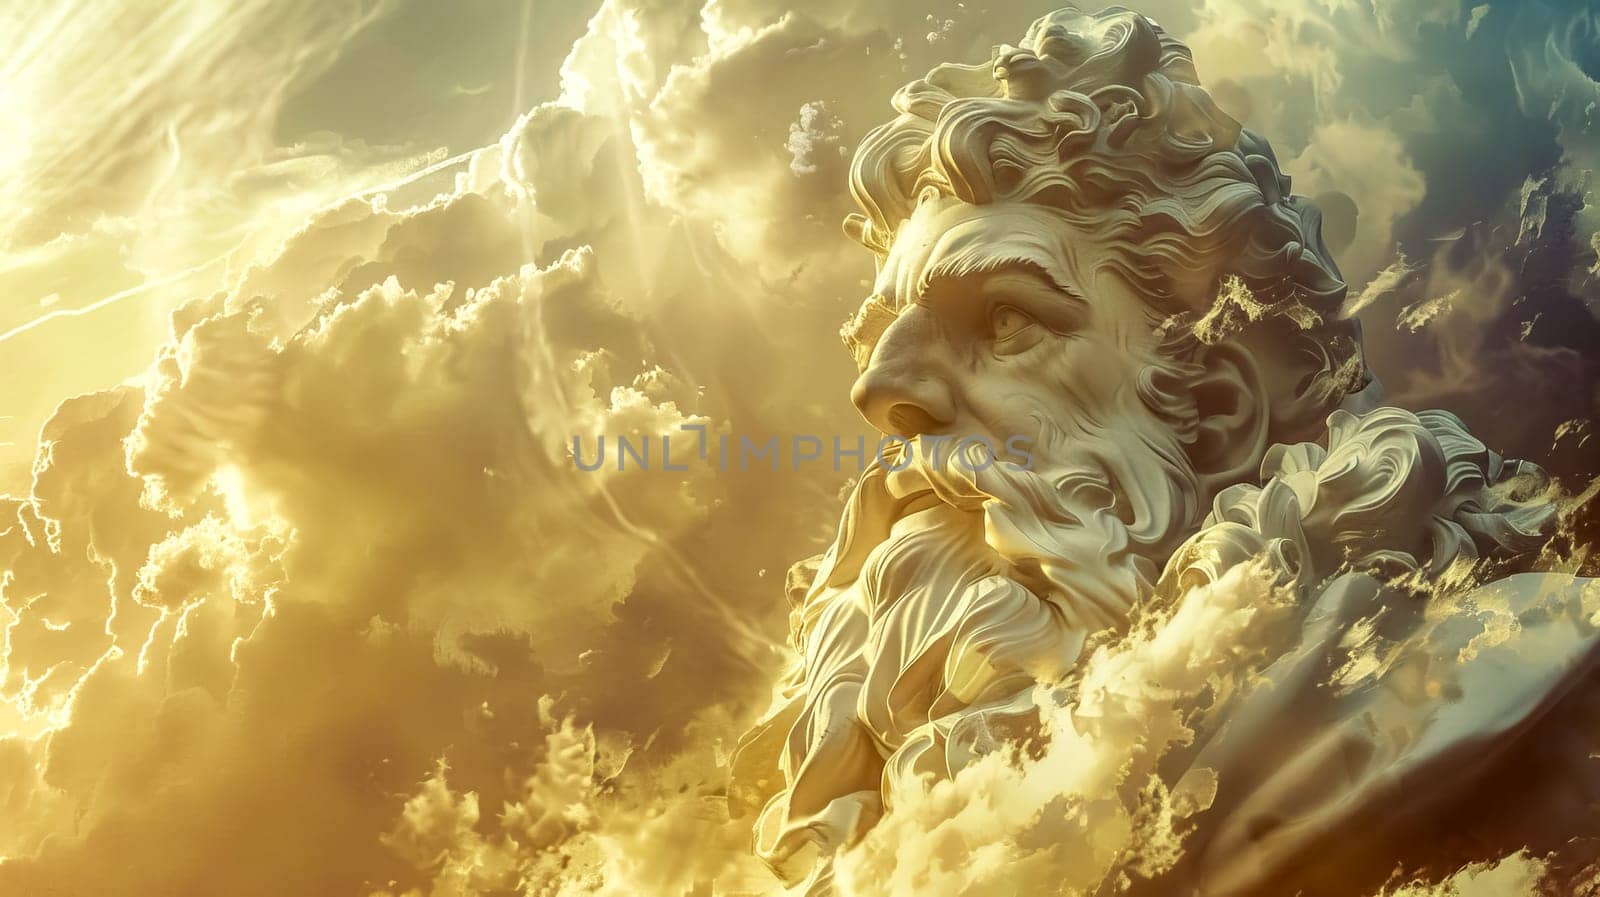 Majestic cloud sculpture of greek god in sky by Edophoto